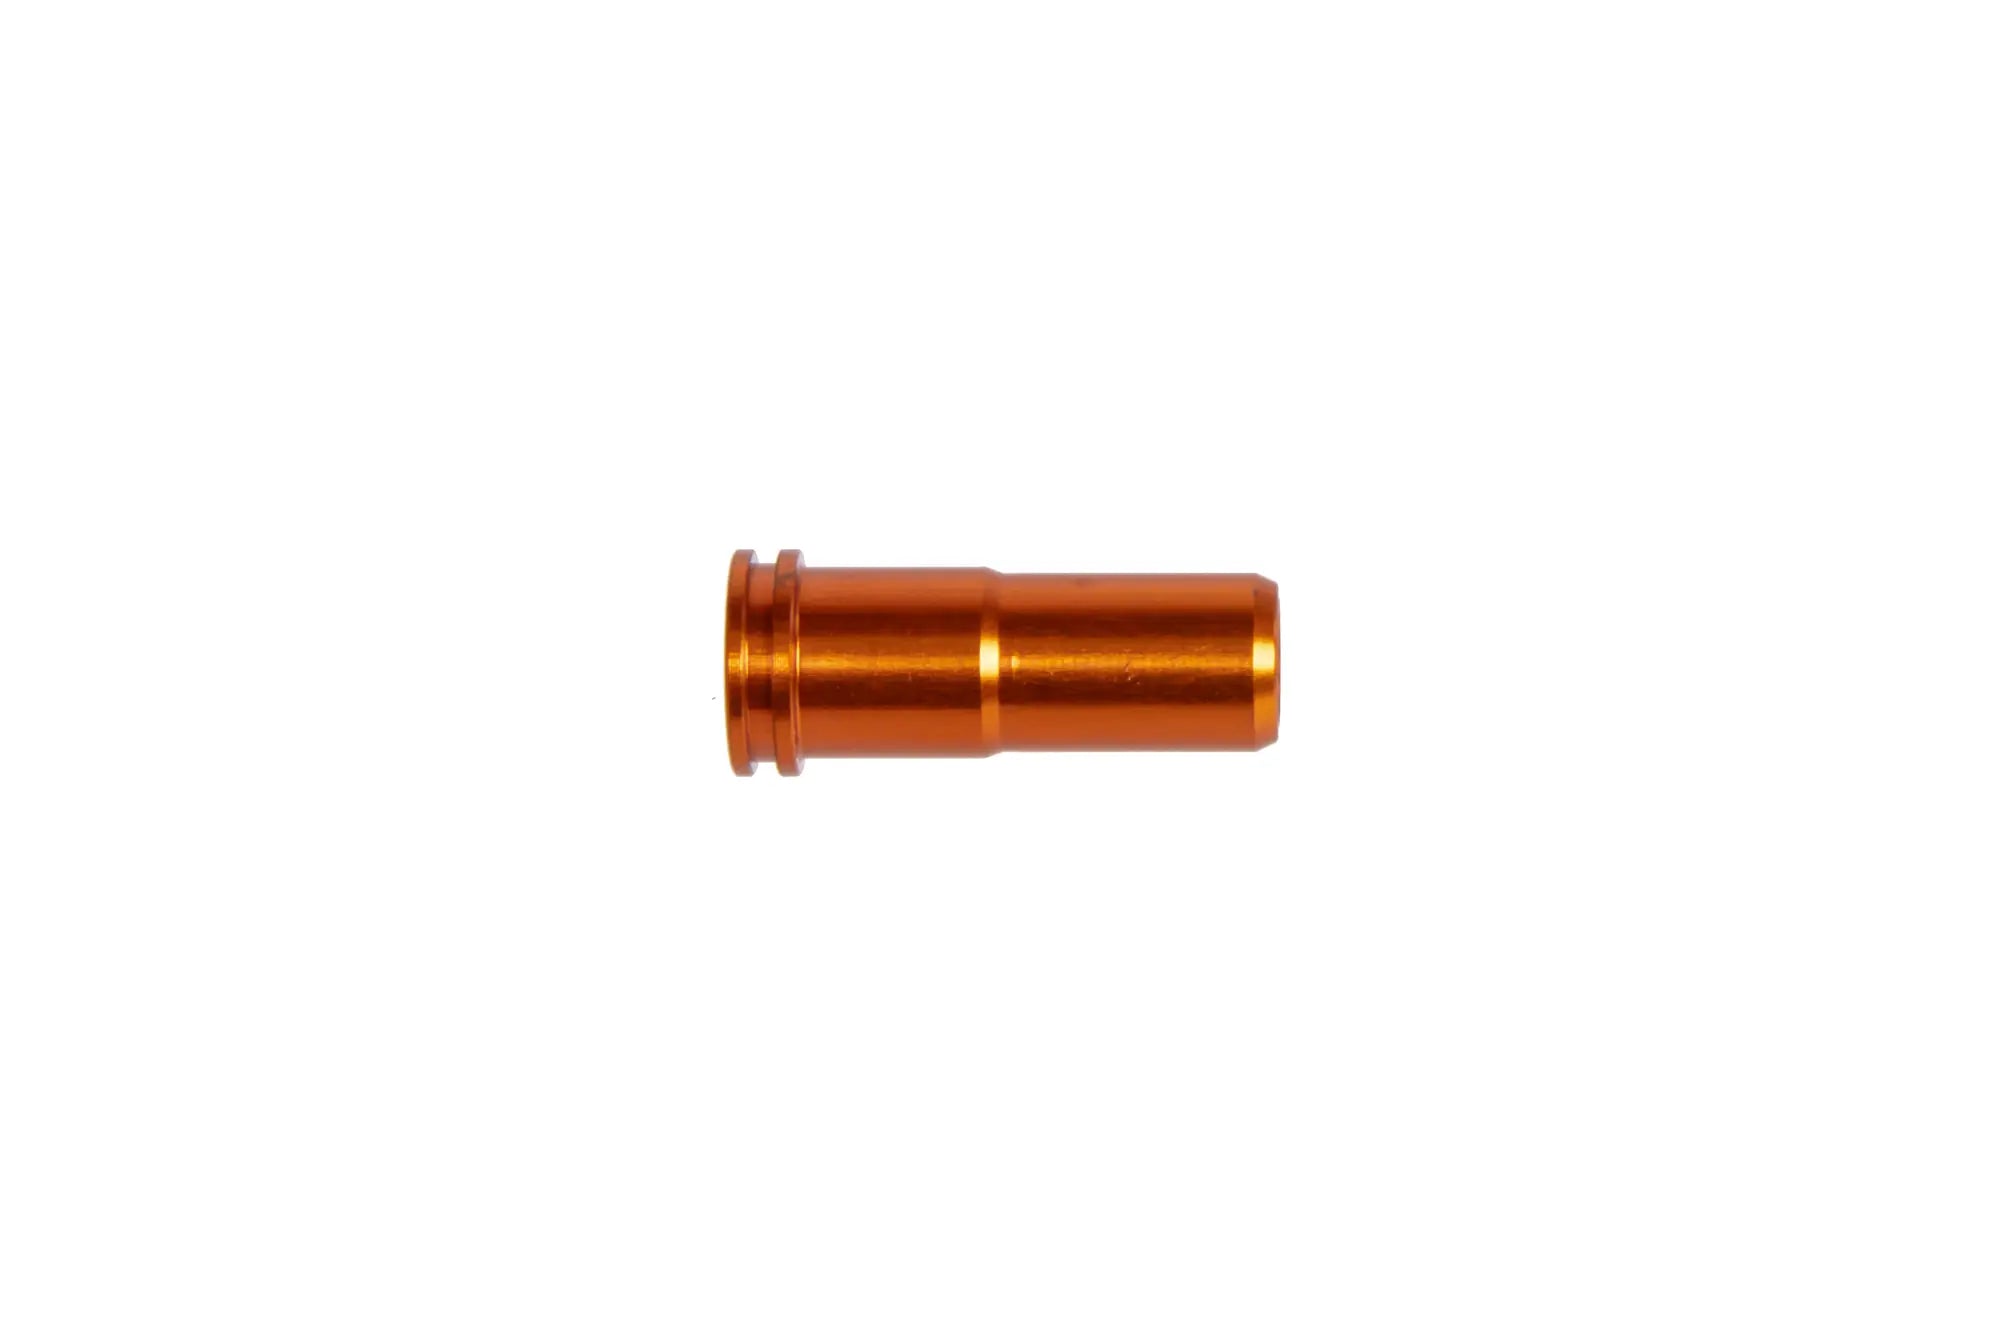 Sealed ERGAL nozzle for M4/AR-15 21.45mm replicas Orange-2